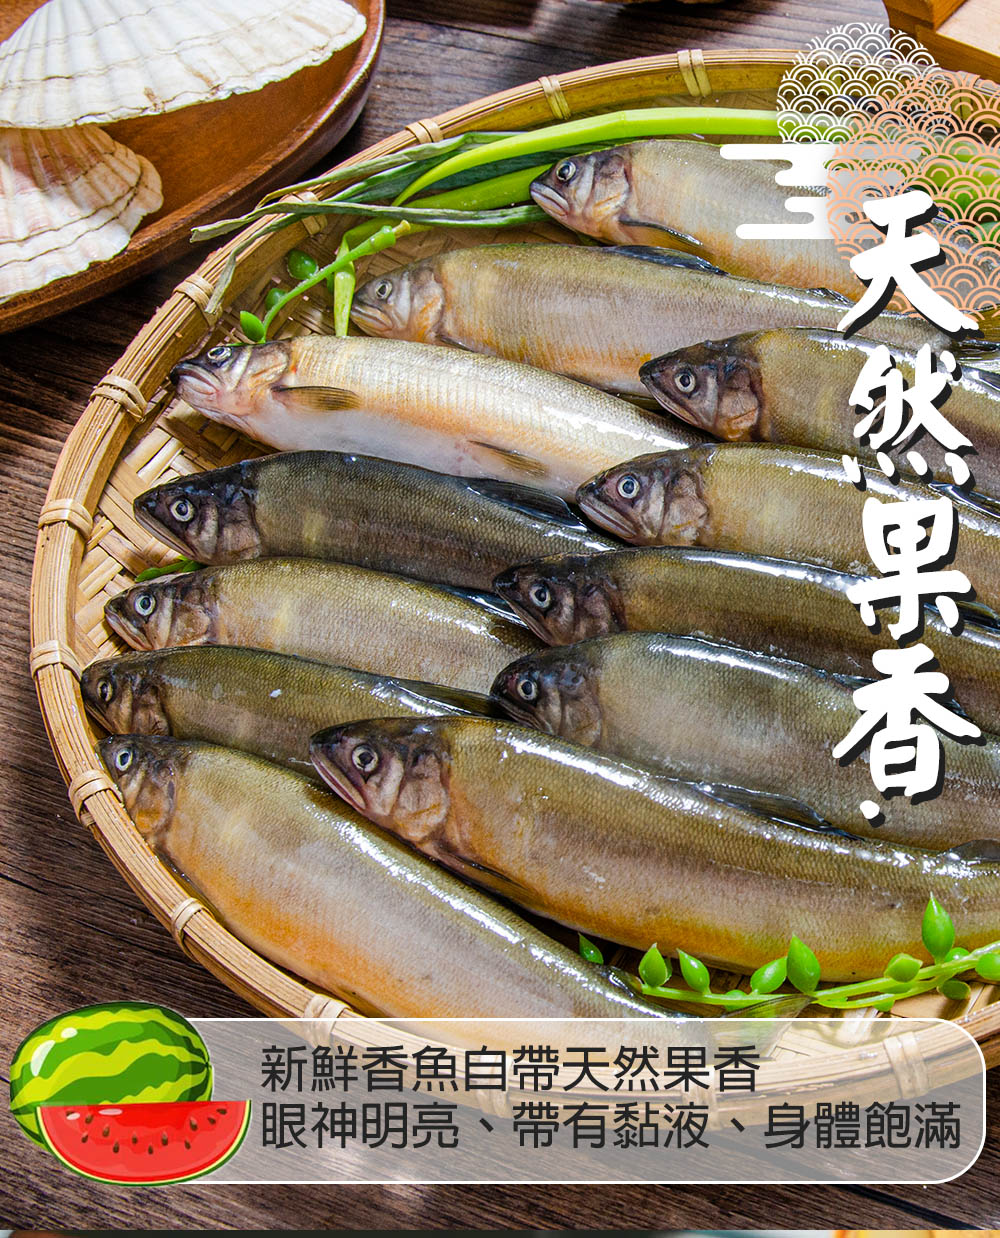 【鮮綠生活】宜蘭公香魚 12尾/盒(920g±5%)